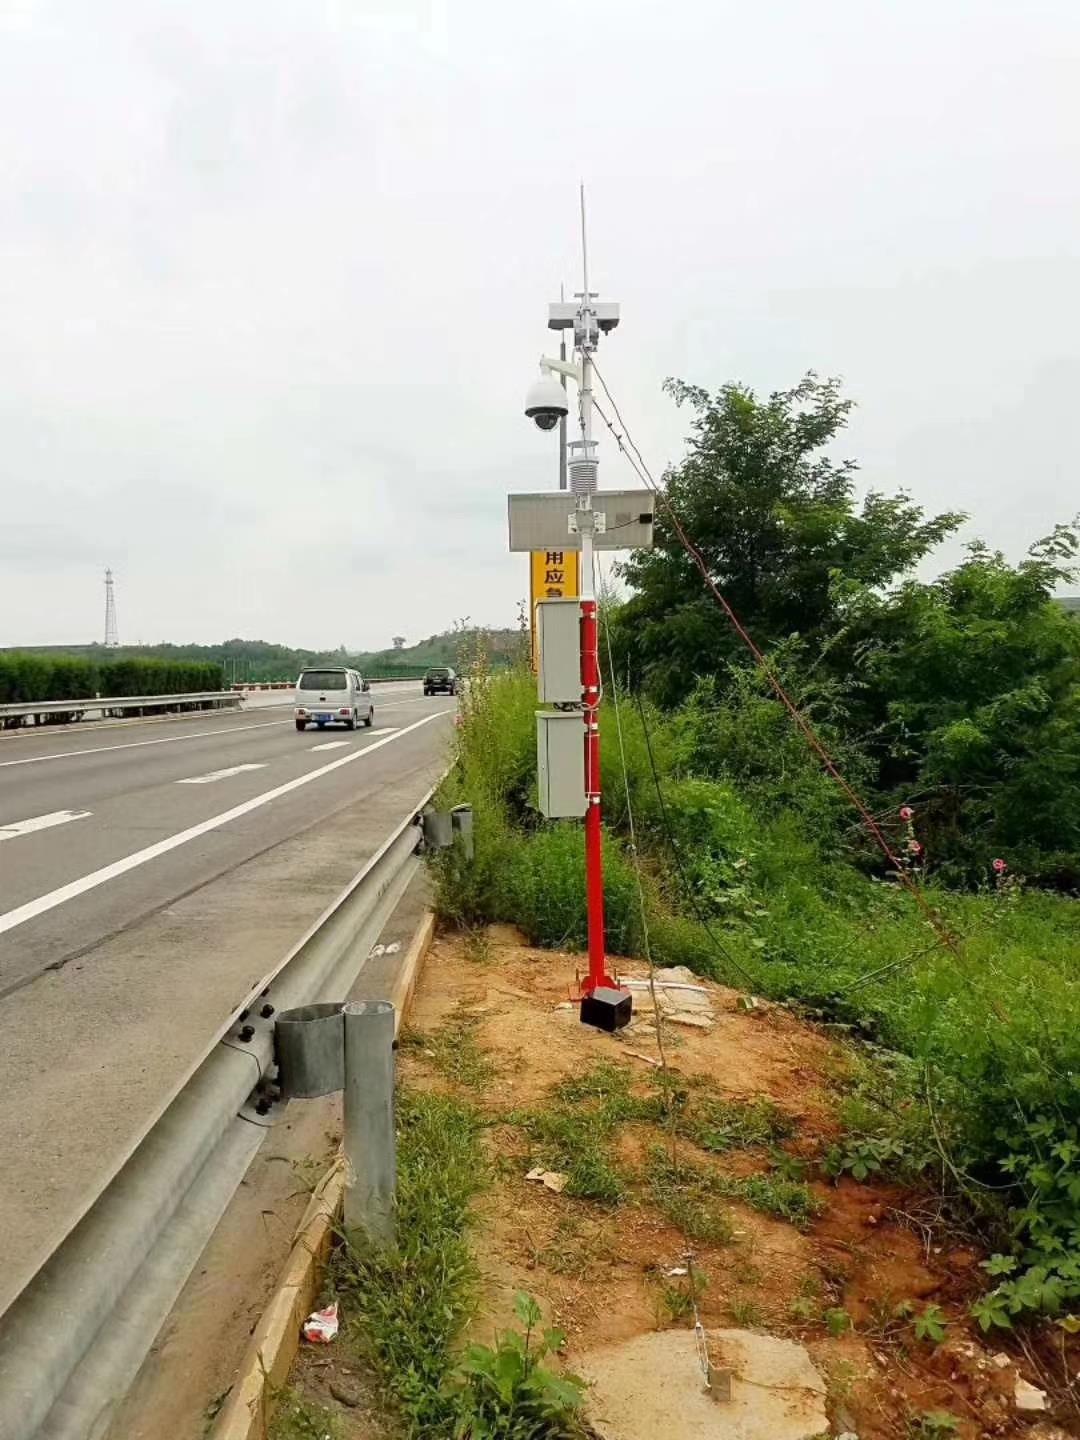 青岛气象监测设备电话 交通气象监测仪